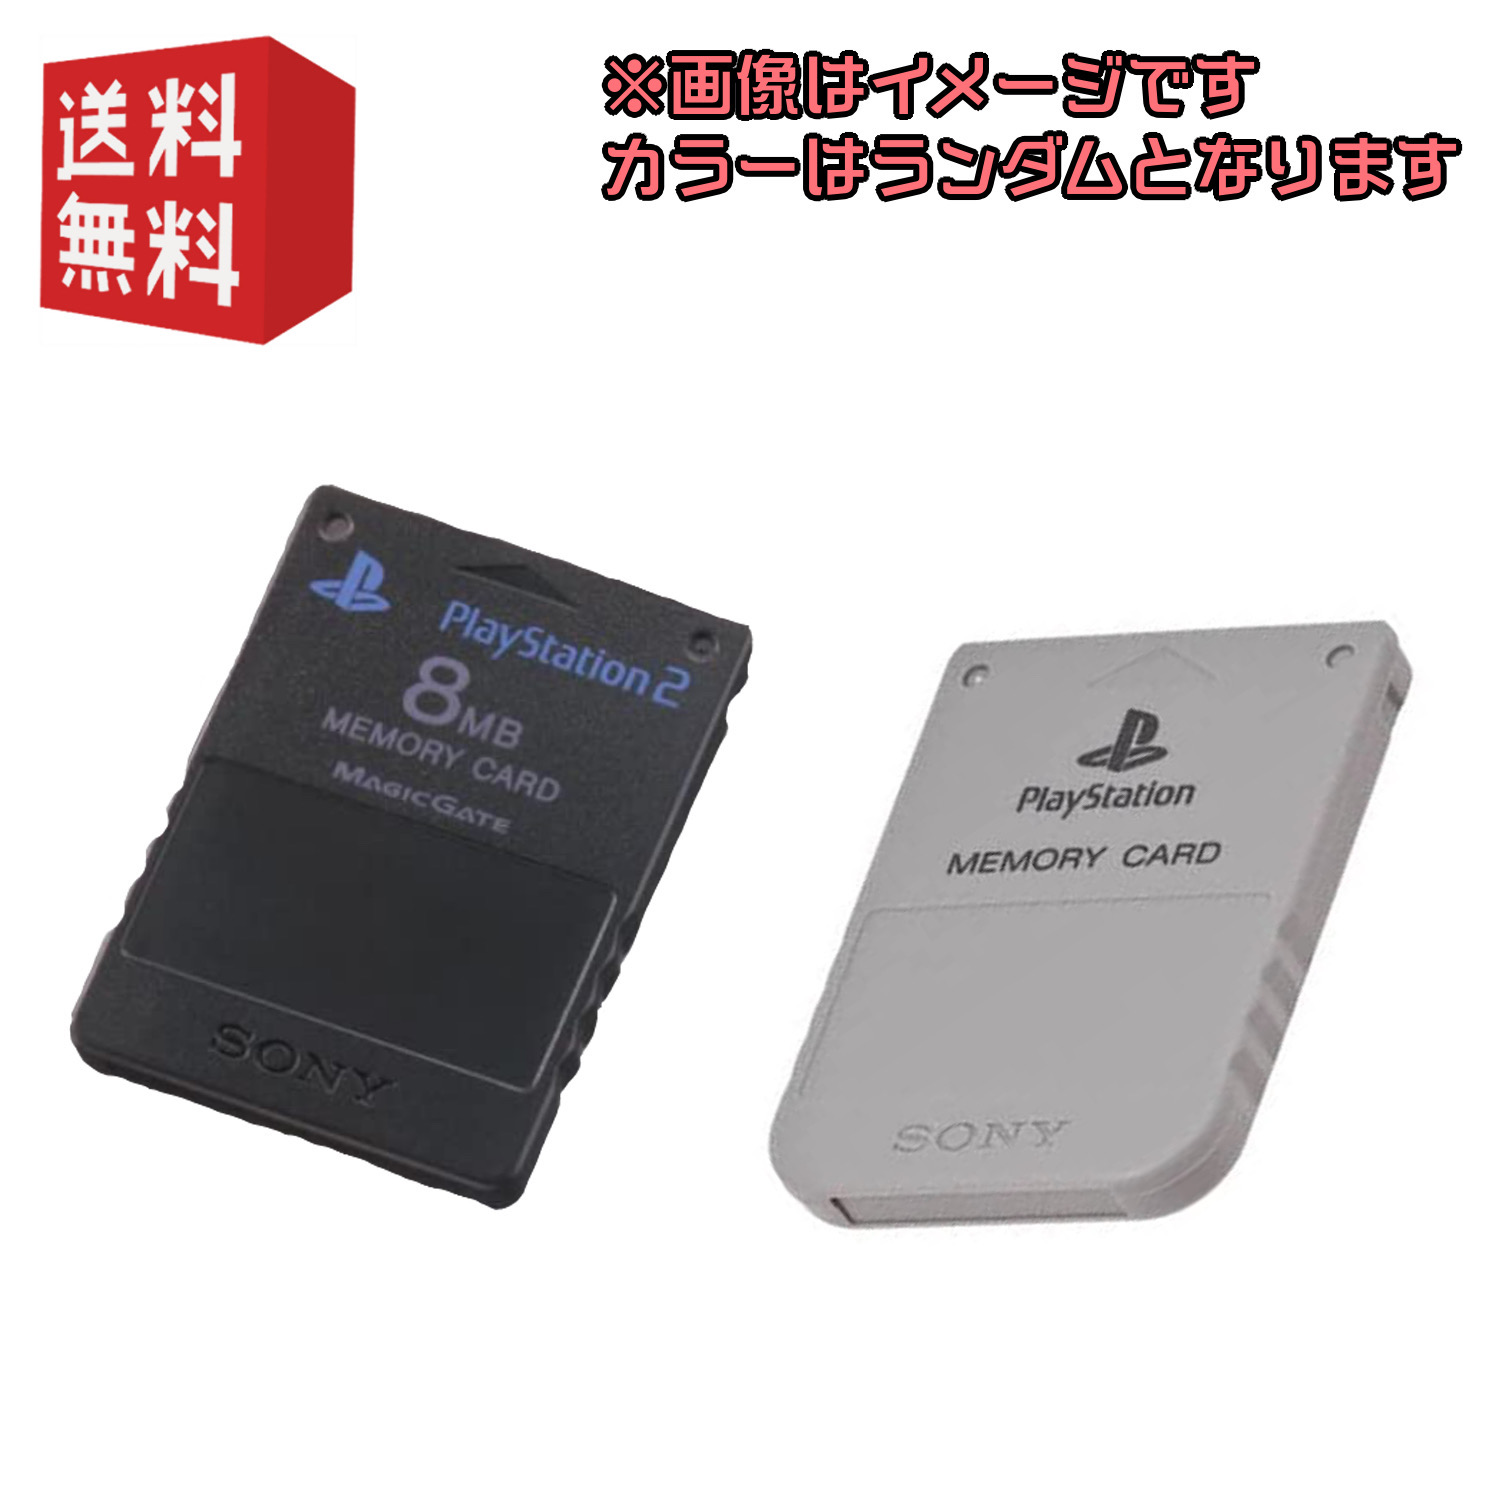 新品未使用正規品 PS2 プレイステーション2用 ソニー純正 メモリーカード ブラック